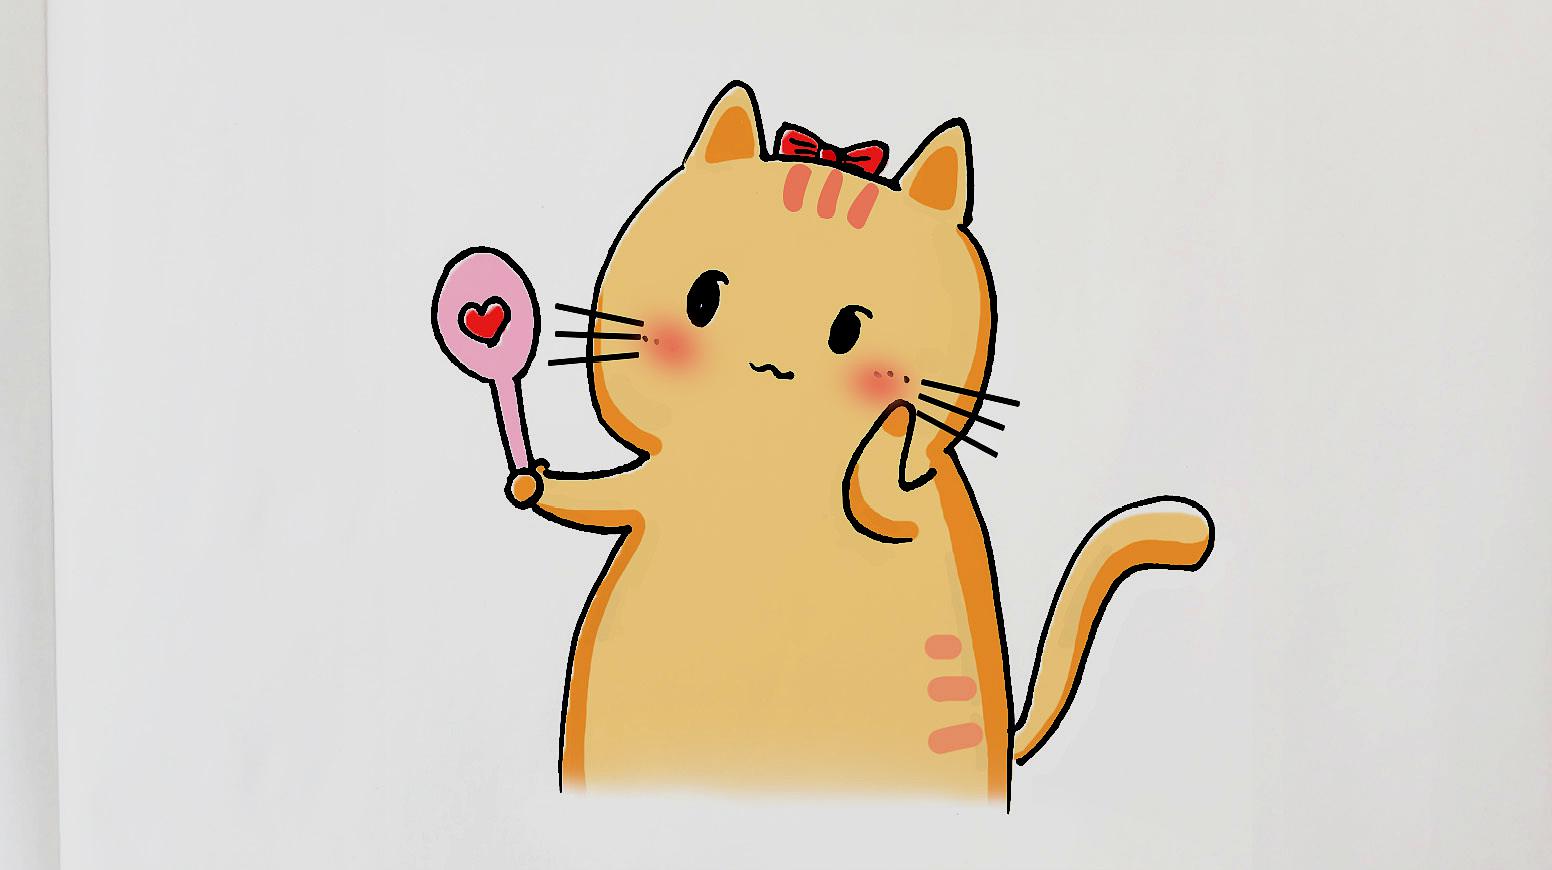 可爱小猫•简笔画 - 全部作品 - 素材集市